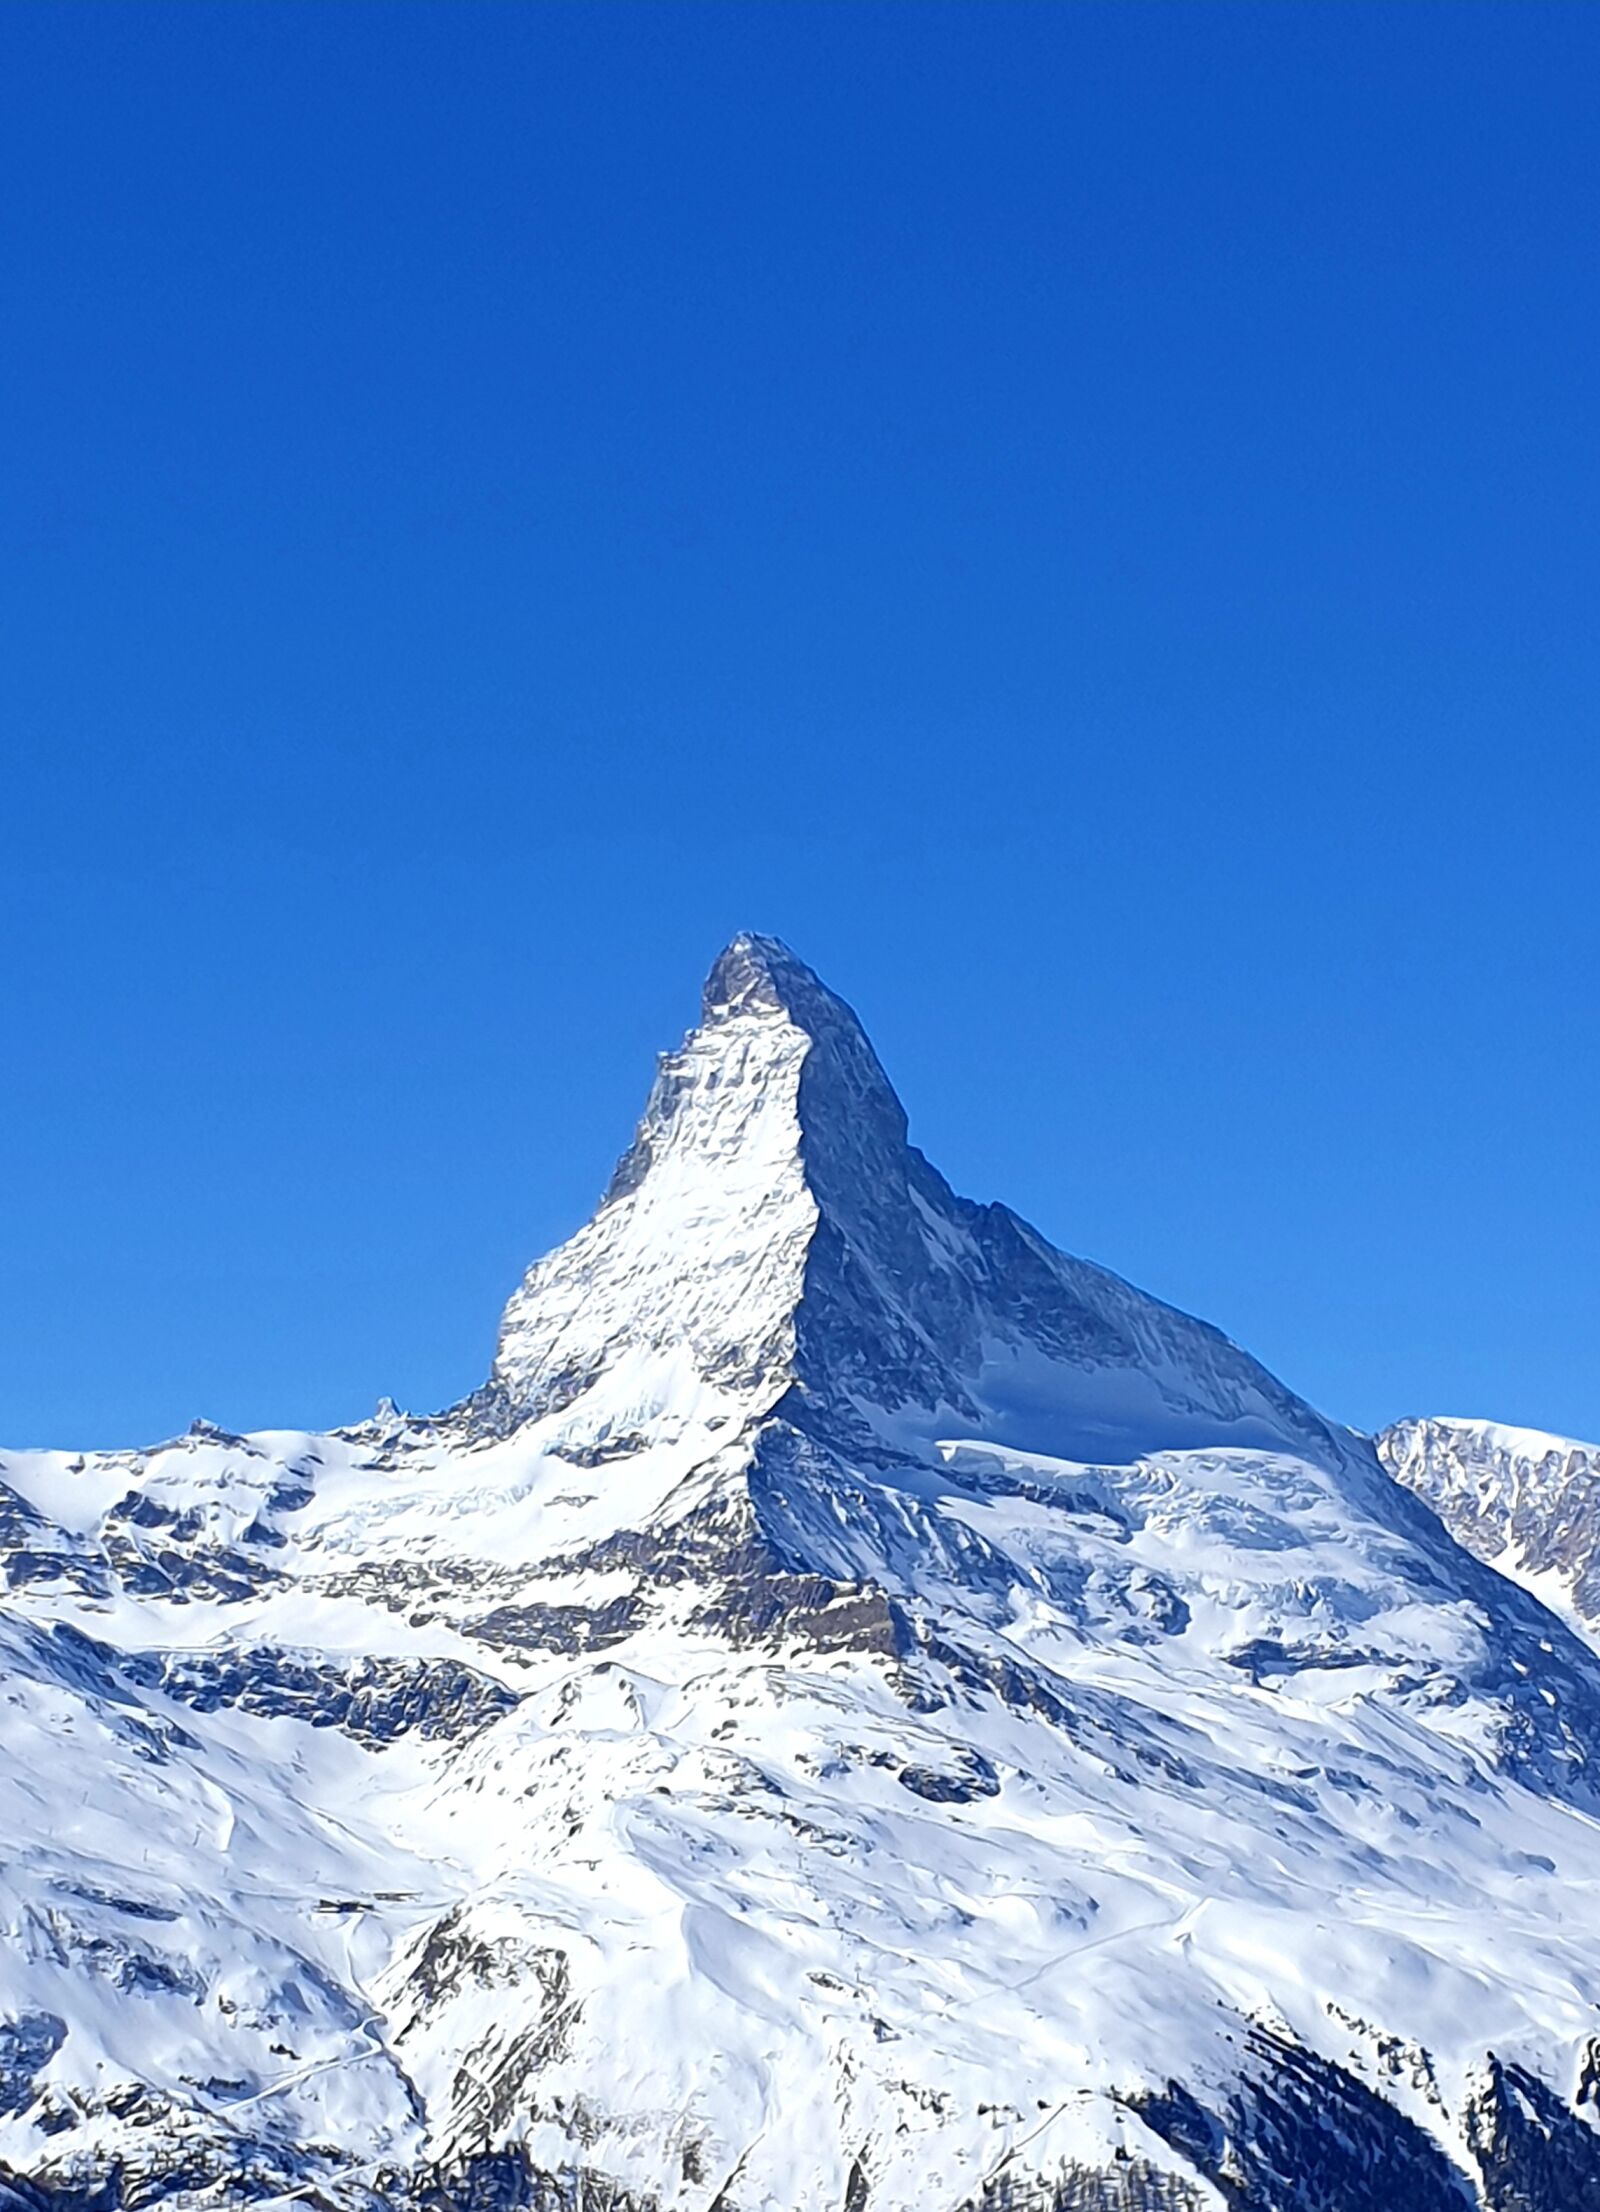 Samsung Galaxy S9 sample photo. Matterhorn, zermatt, valais photography